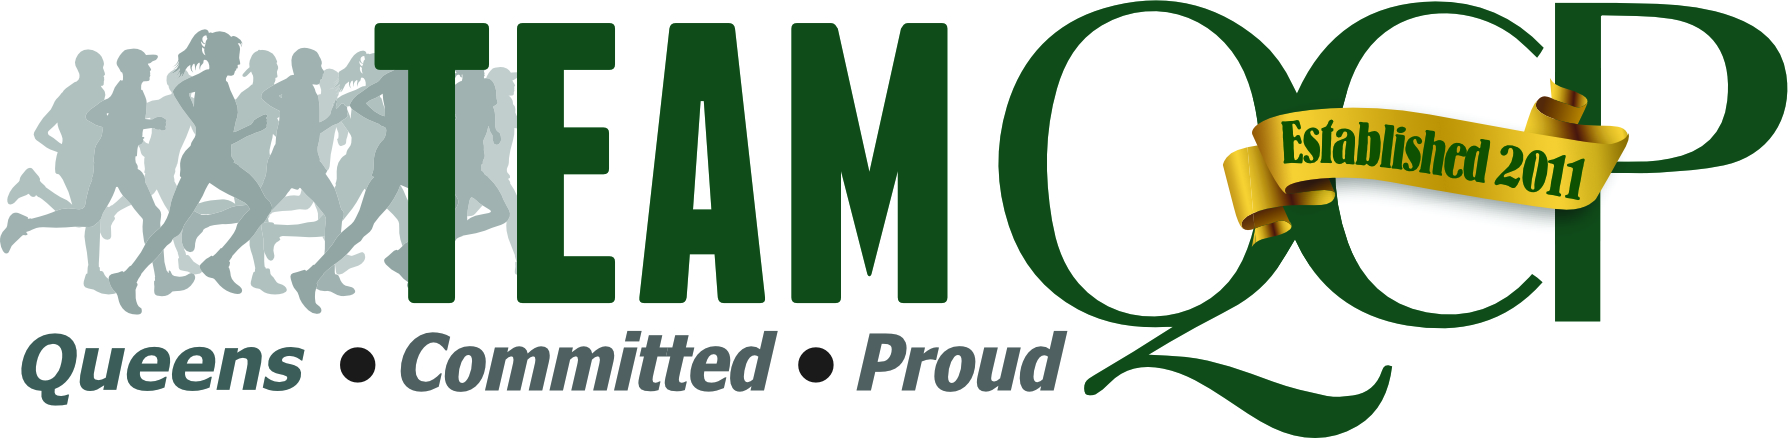 teamqcp-logo.jpg